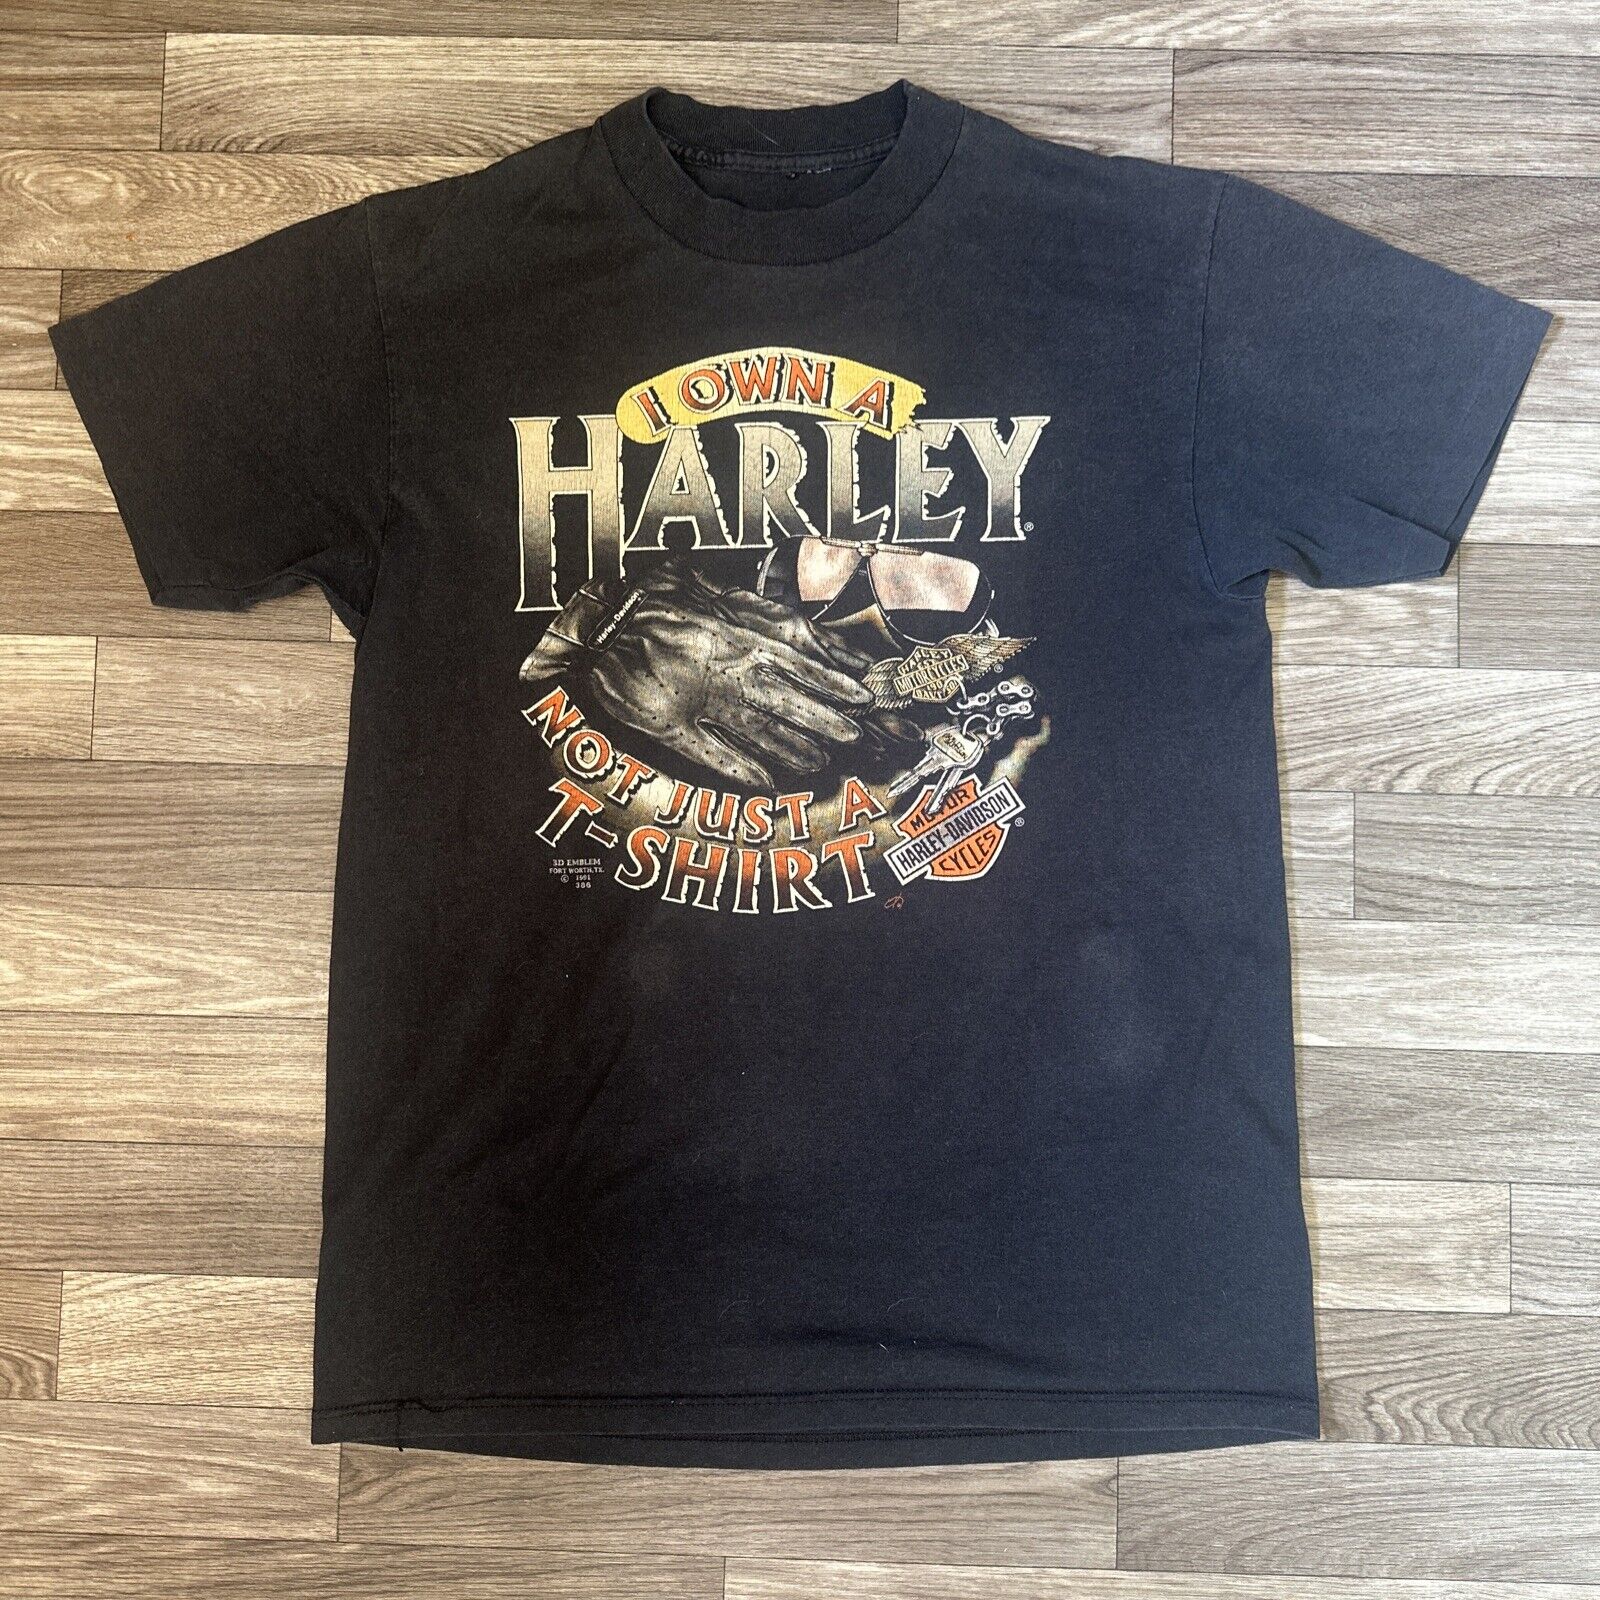 1991 Harley Davidson 3d Emblem “I Own A Harley Not Just A Shirt” Men’s Large